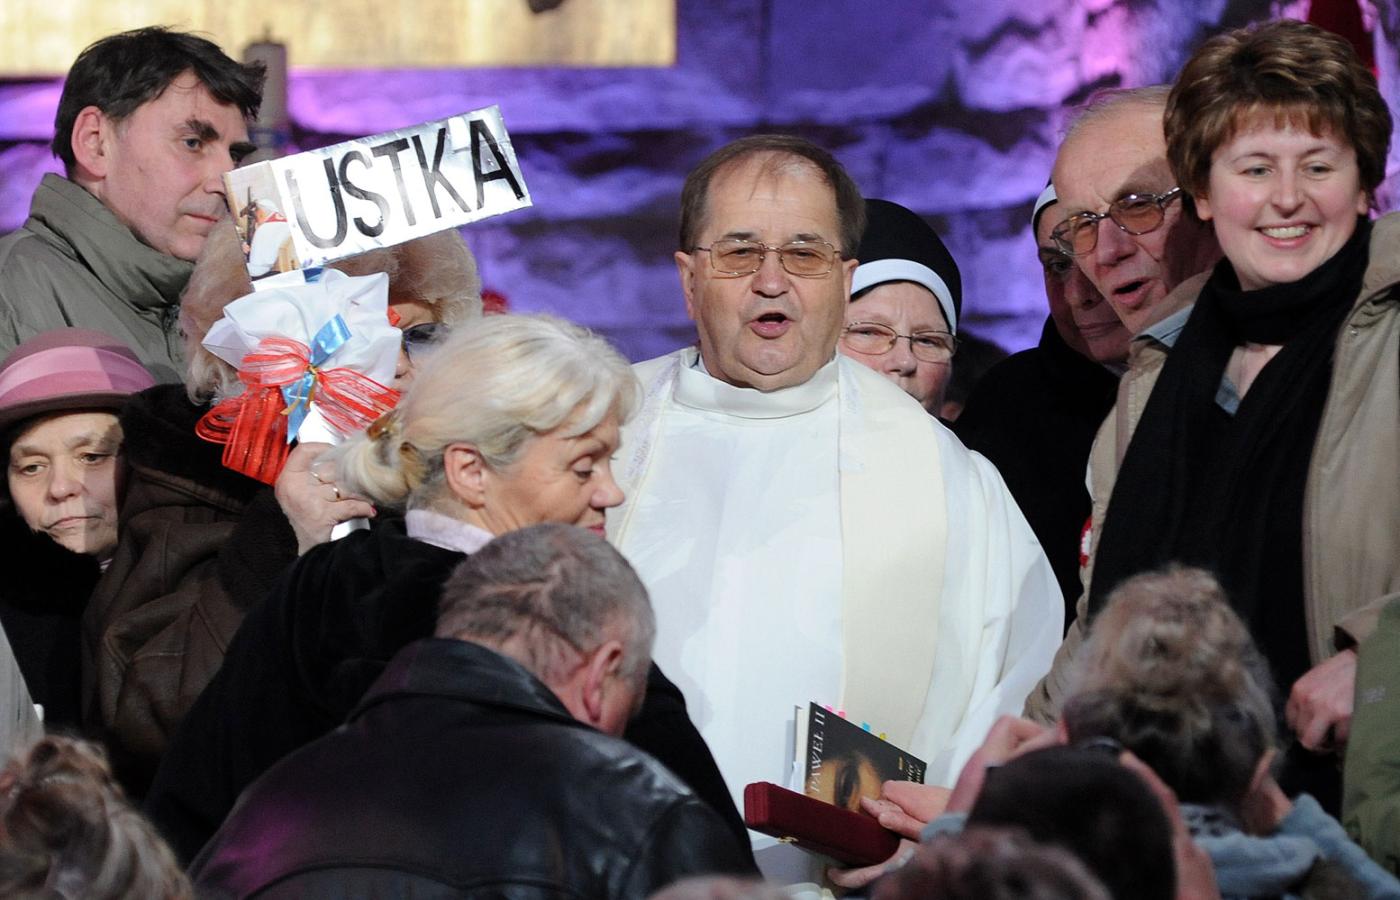 Ojciec Tadeusz Rydzyk podczas obchodów 20-lecia Radia Maryja w Sanktuarium Matki Bożej Nieustającej Pomocy w Toruniu.